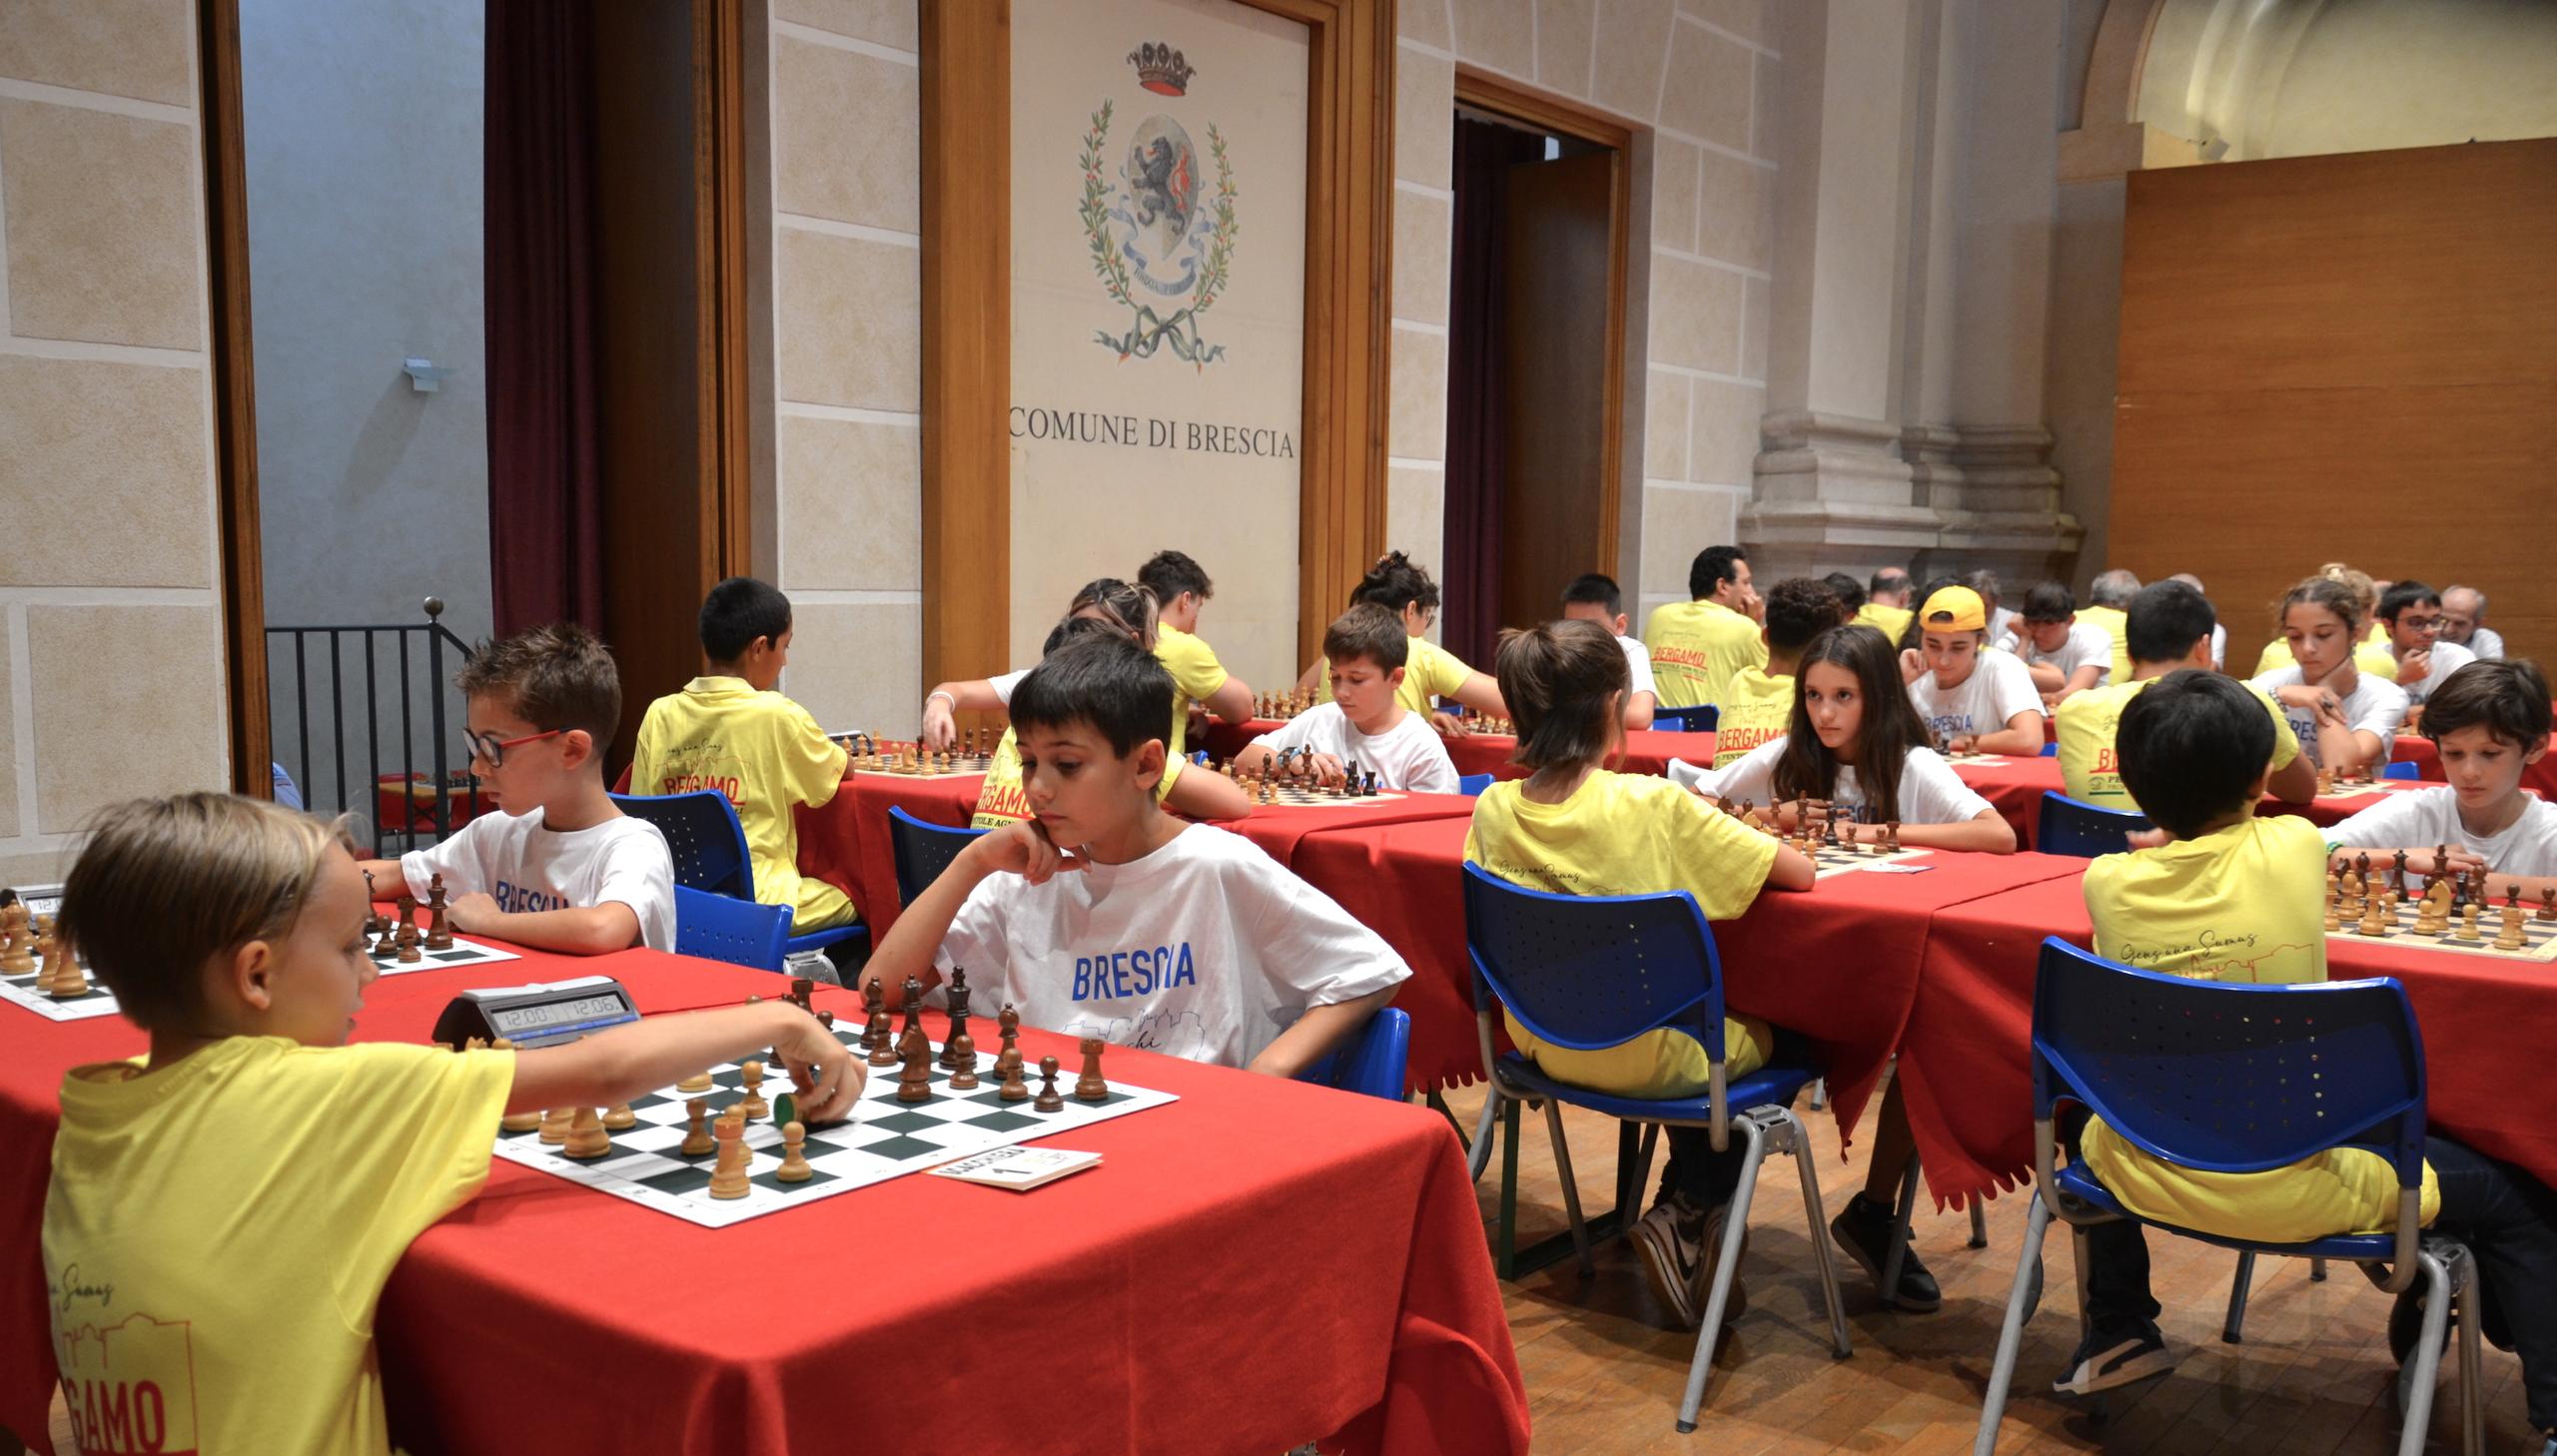 Campionati italiani di scacchi, inizia il conto alla rovescia